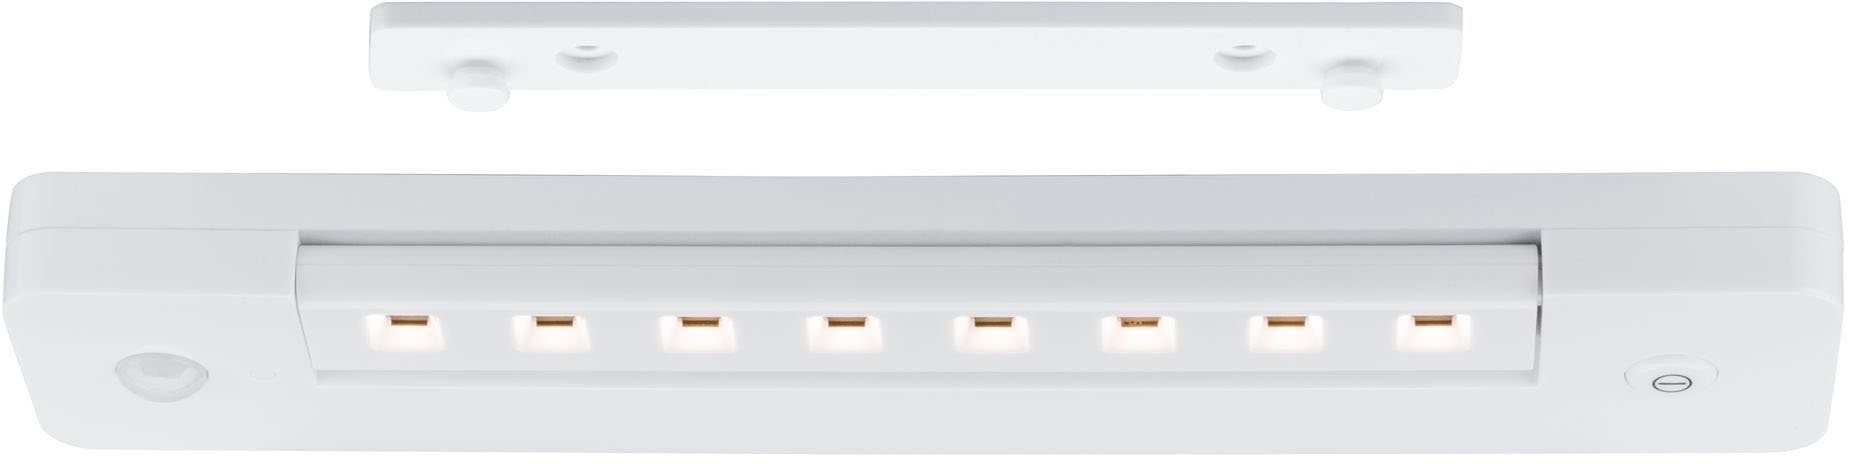 LED Lichtleiste, fest An/Aus/Dimmen&Bewegungsmelder Paulmann integriert, Warmweiß, LED LEDSmartLightbatteriebetrieben+ Schalter